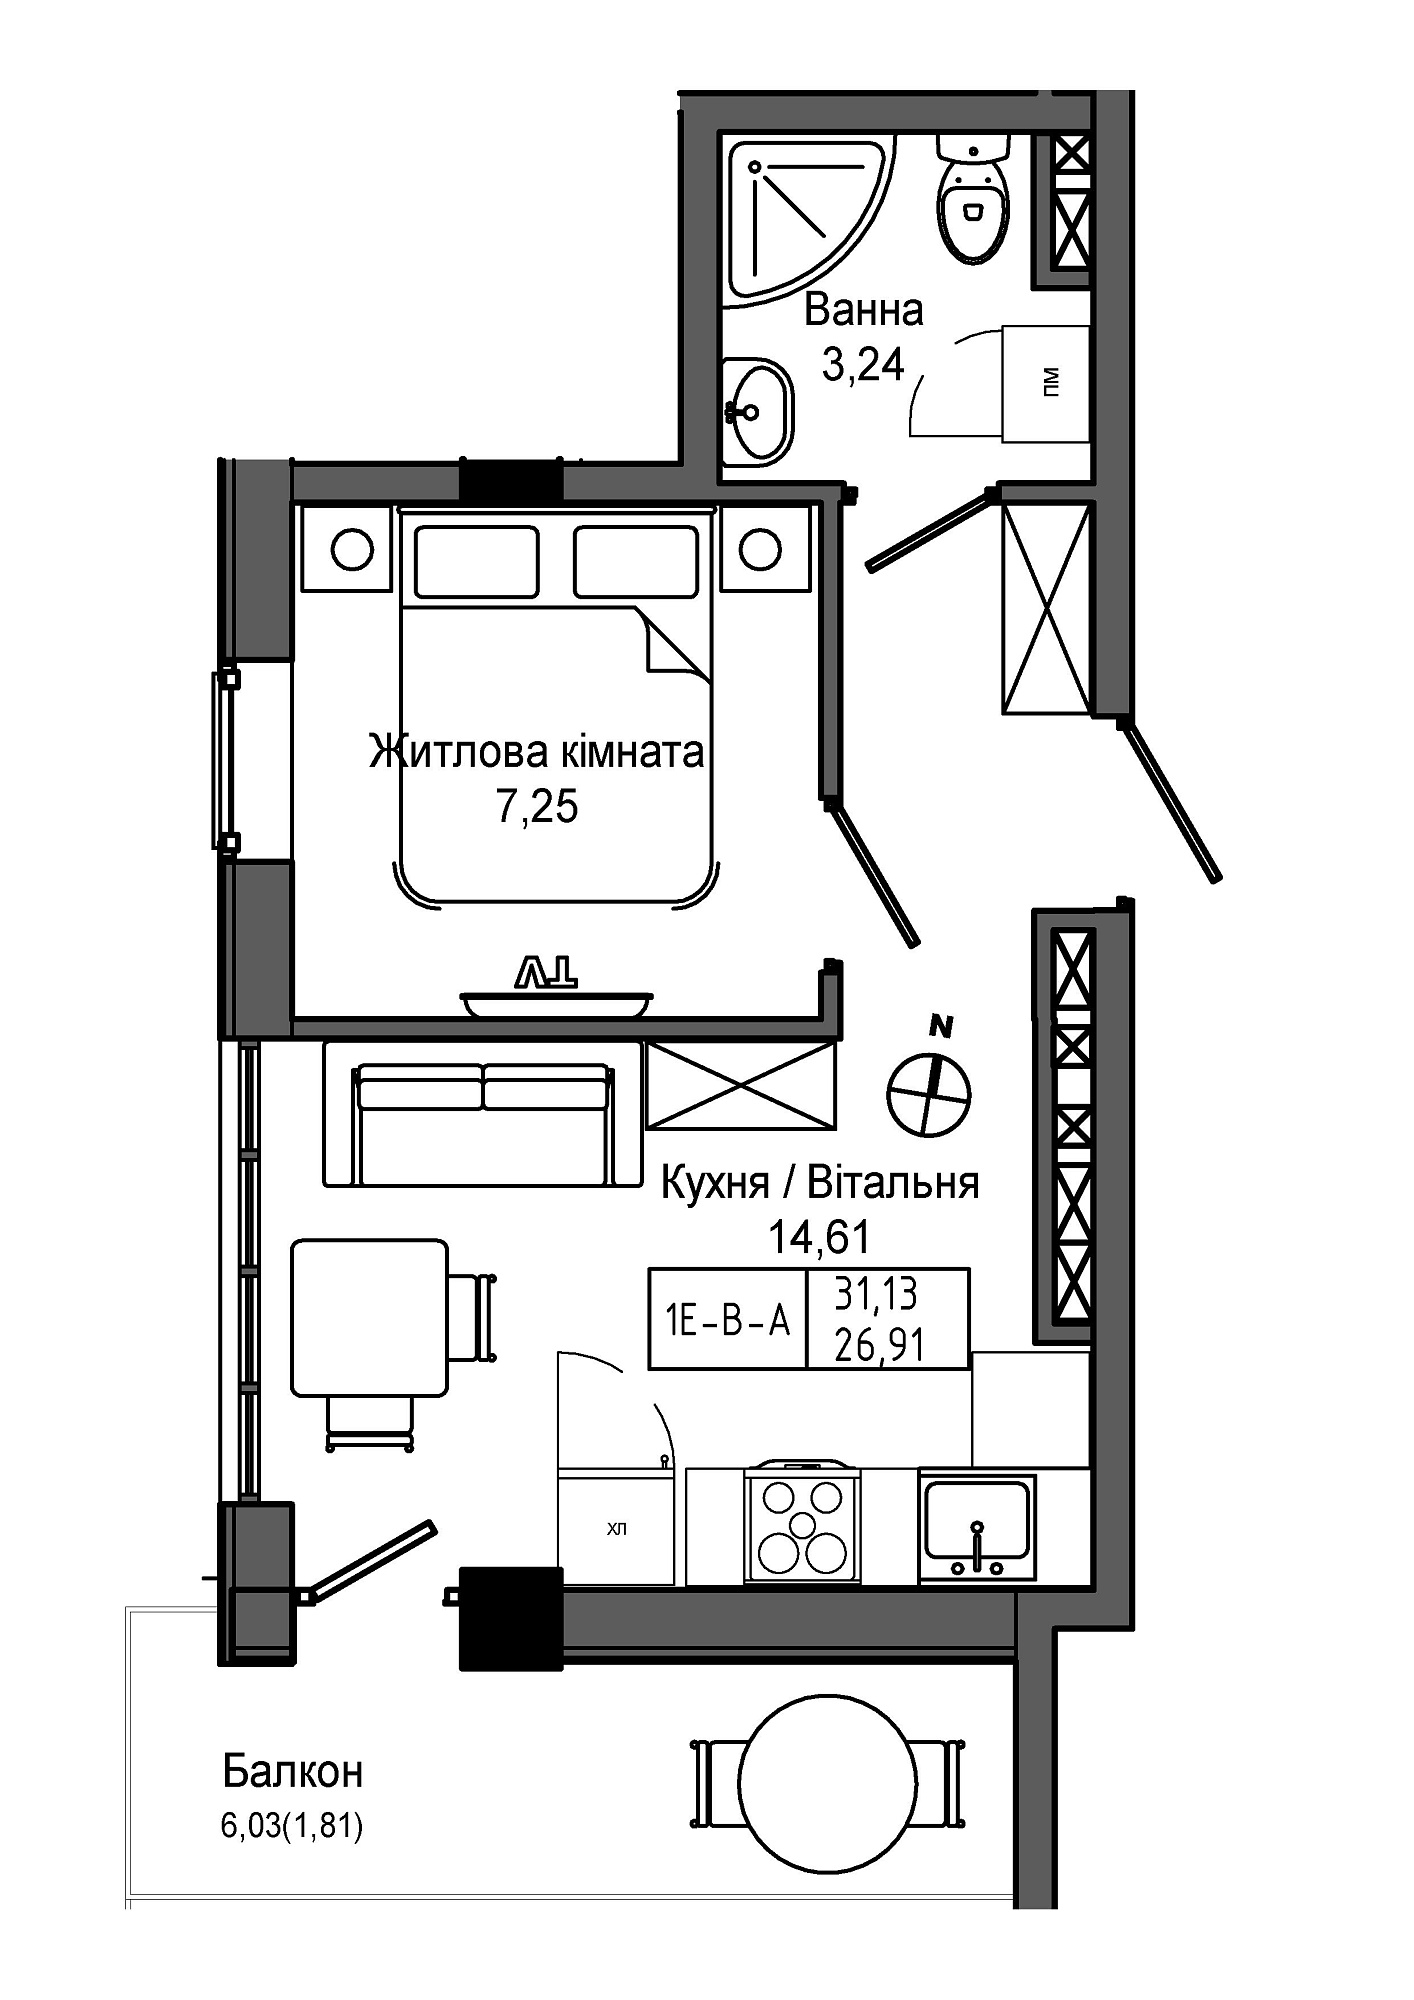 Планировка 1-к квартира площей 26.91м2, UM-006-06/0015.